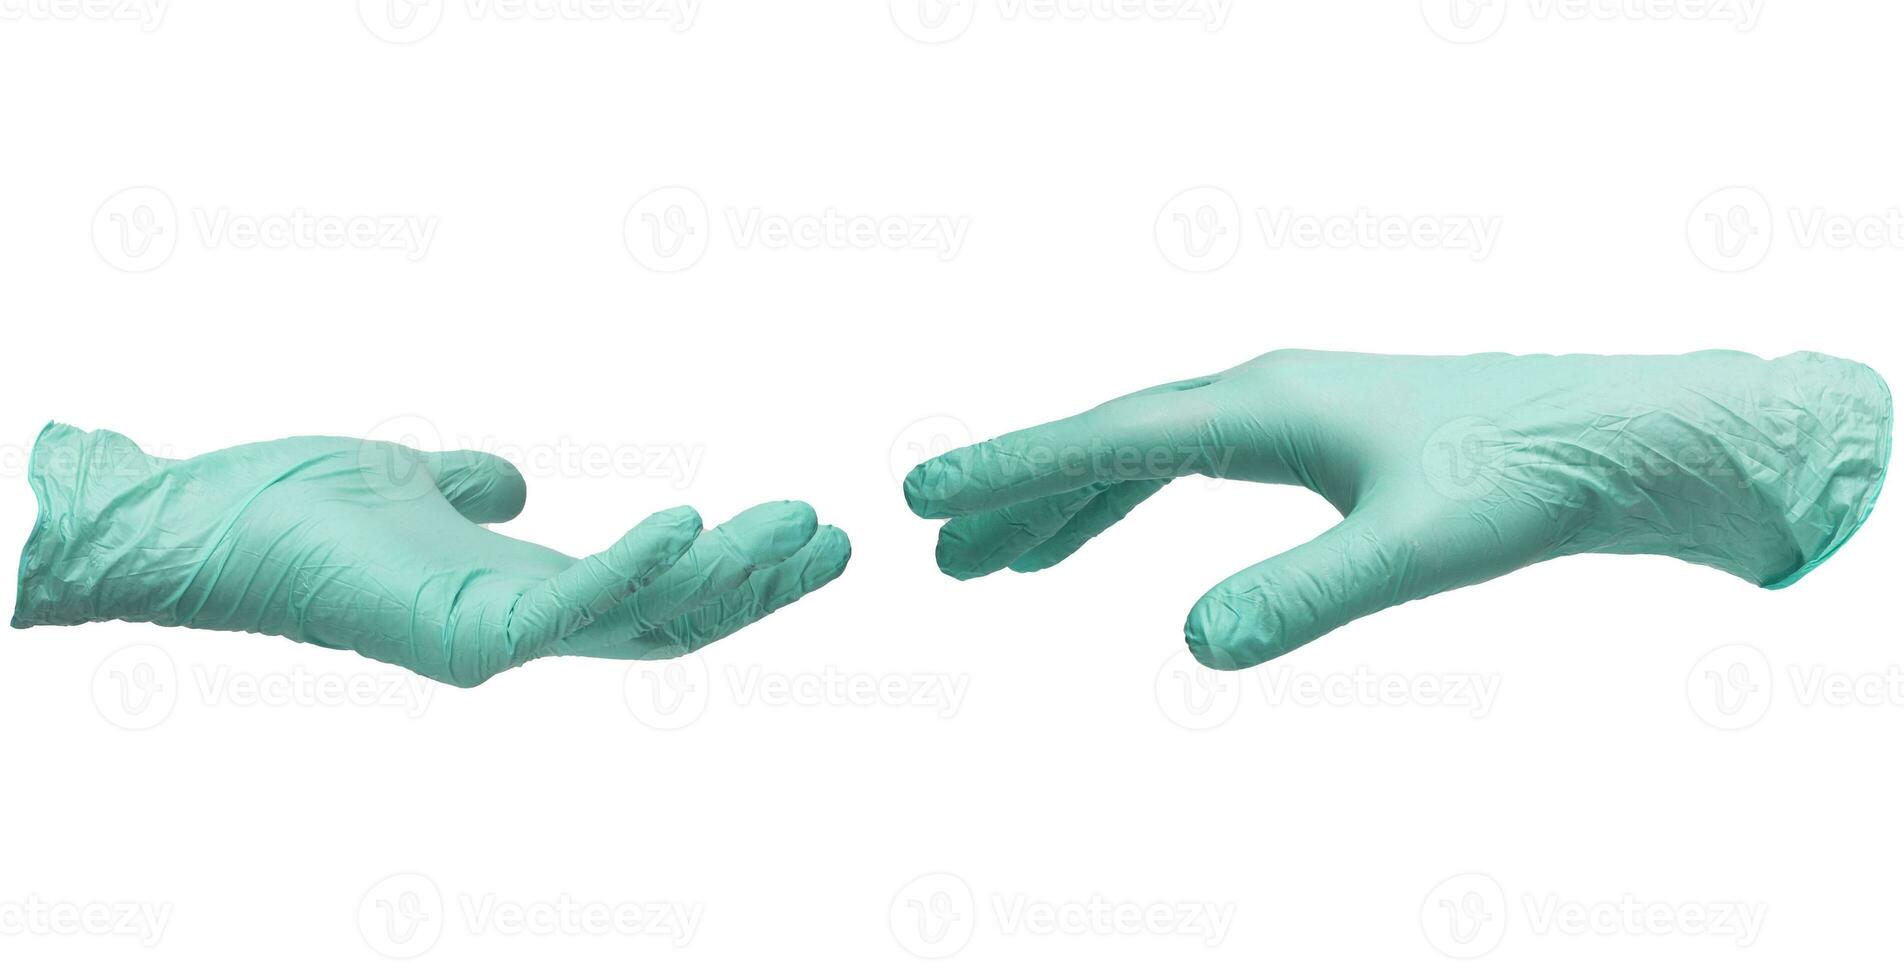 dos manos en estéril color menta nitrilo guantes alcanzar fuera a cada otro. piel proteccion durante epidemias y cuarentena. allí es un sitio para texto. alto calidad foto